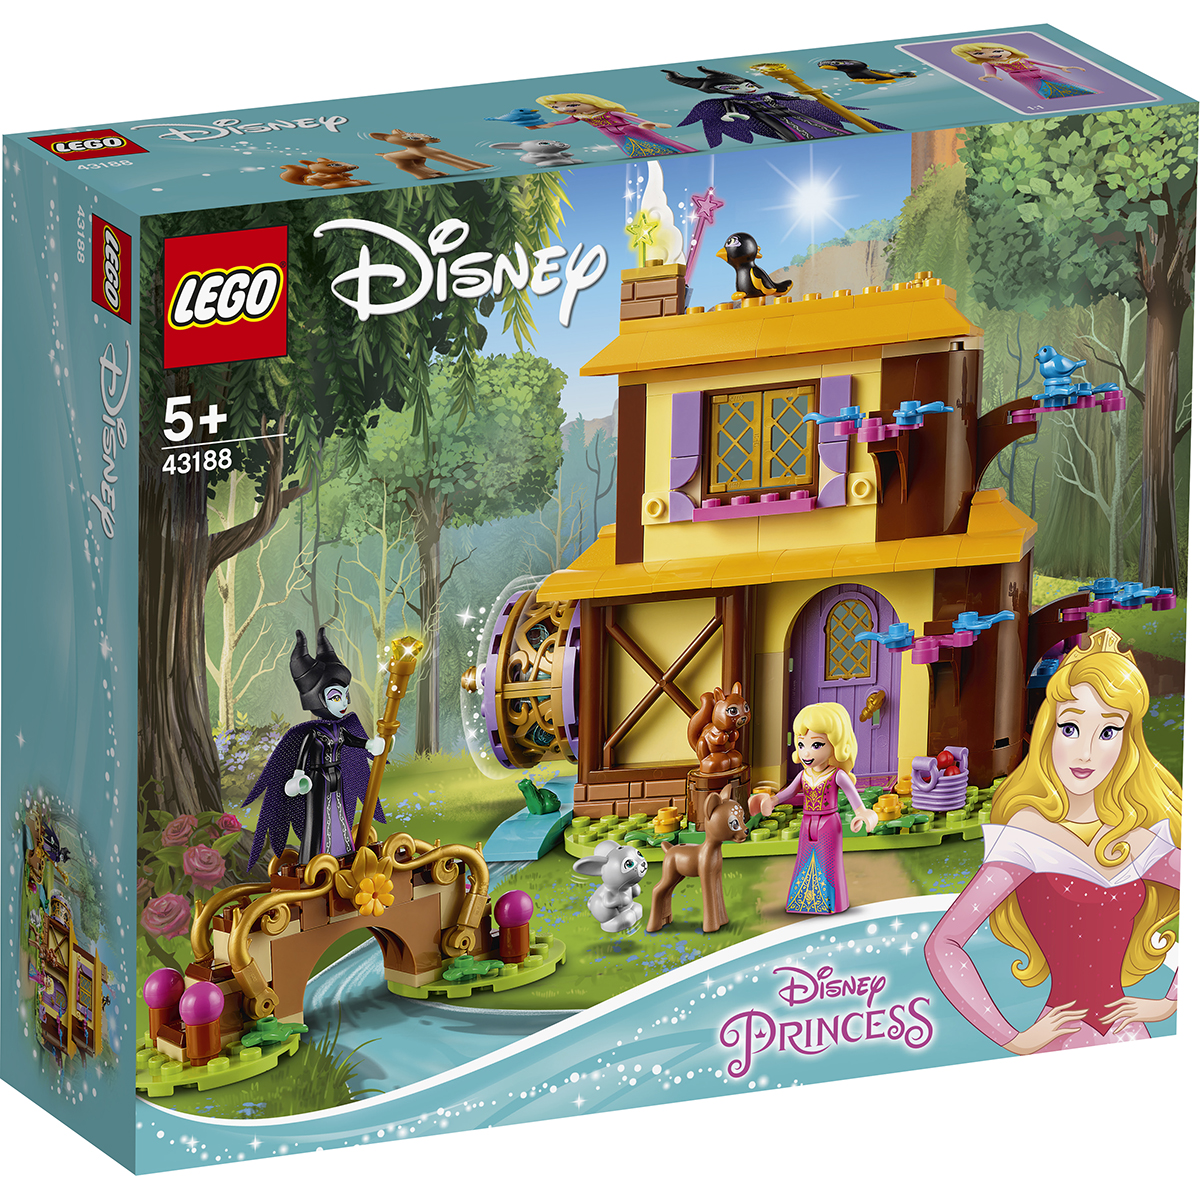 LEGOÃ‚Â® Disney PrincessÃ¢â€žÂ¢ - Casuta din padurea Aurorei (43188)